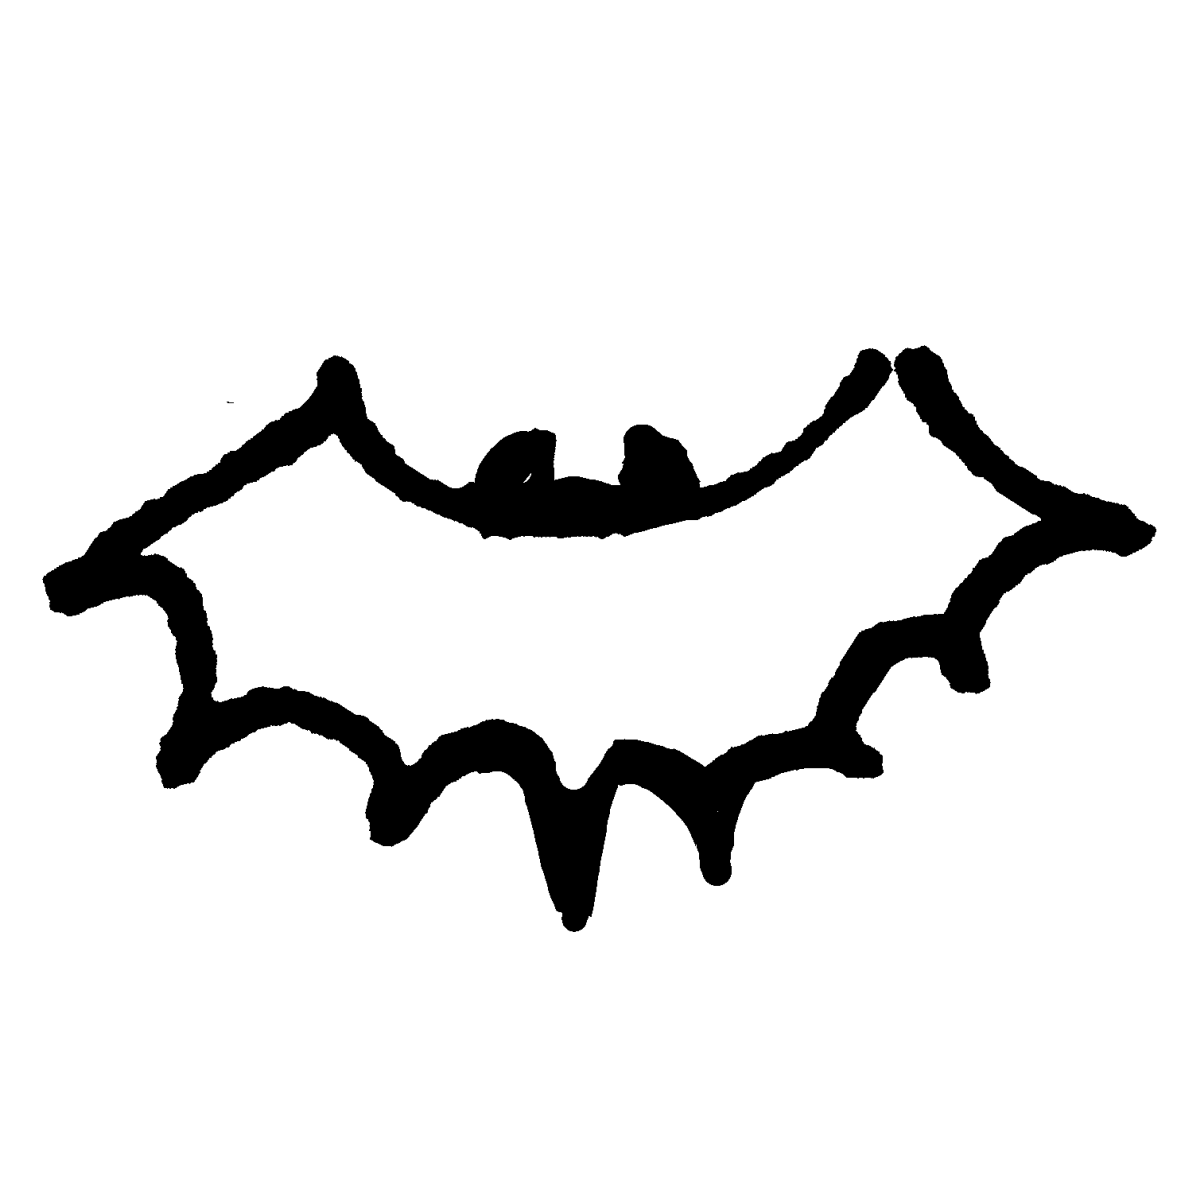 コウモリ 4種 のイラスト Bats 4 Types てがきですのb かわいい ゆるい無料イラスト